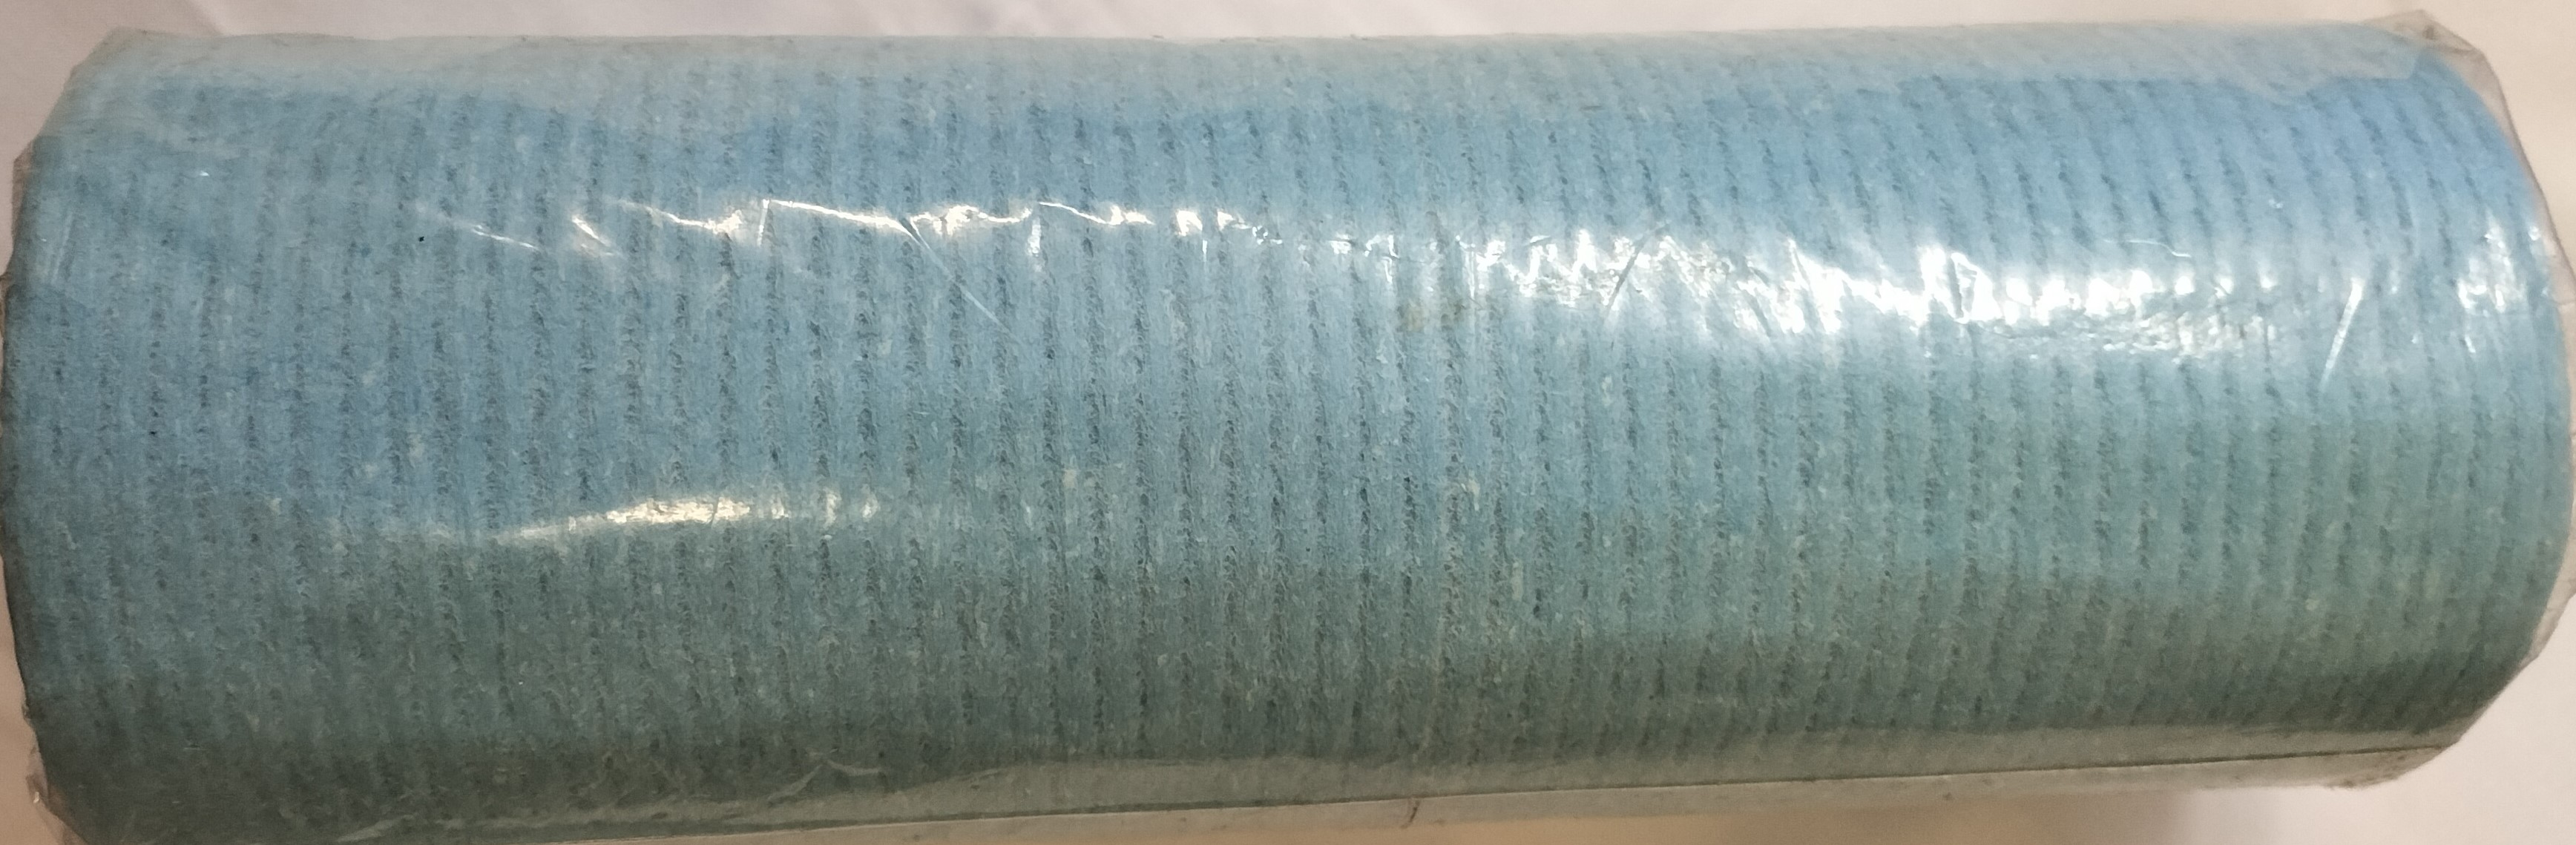 Sponge Cloth Vileda Dry Roll 26cm x 2.5m